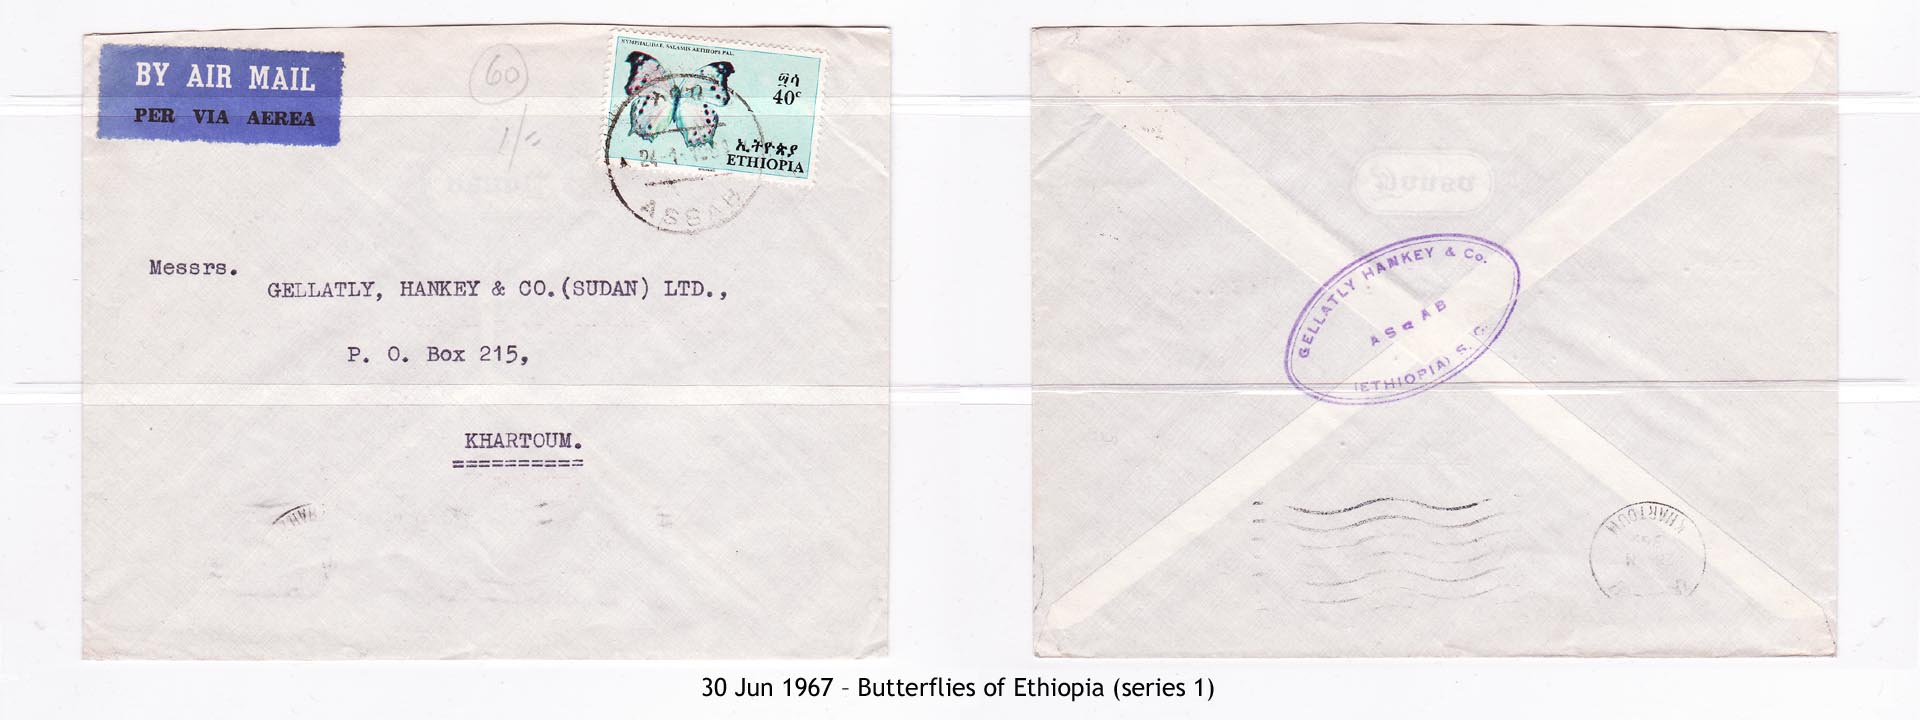 19670630 – Butterflies of Ethiopia (series 1)